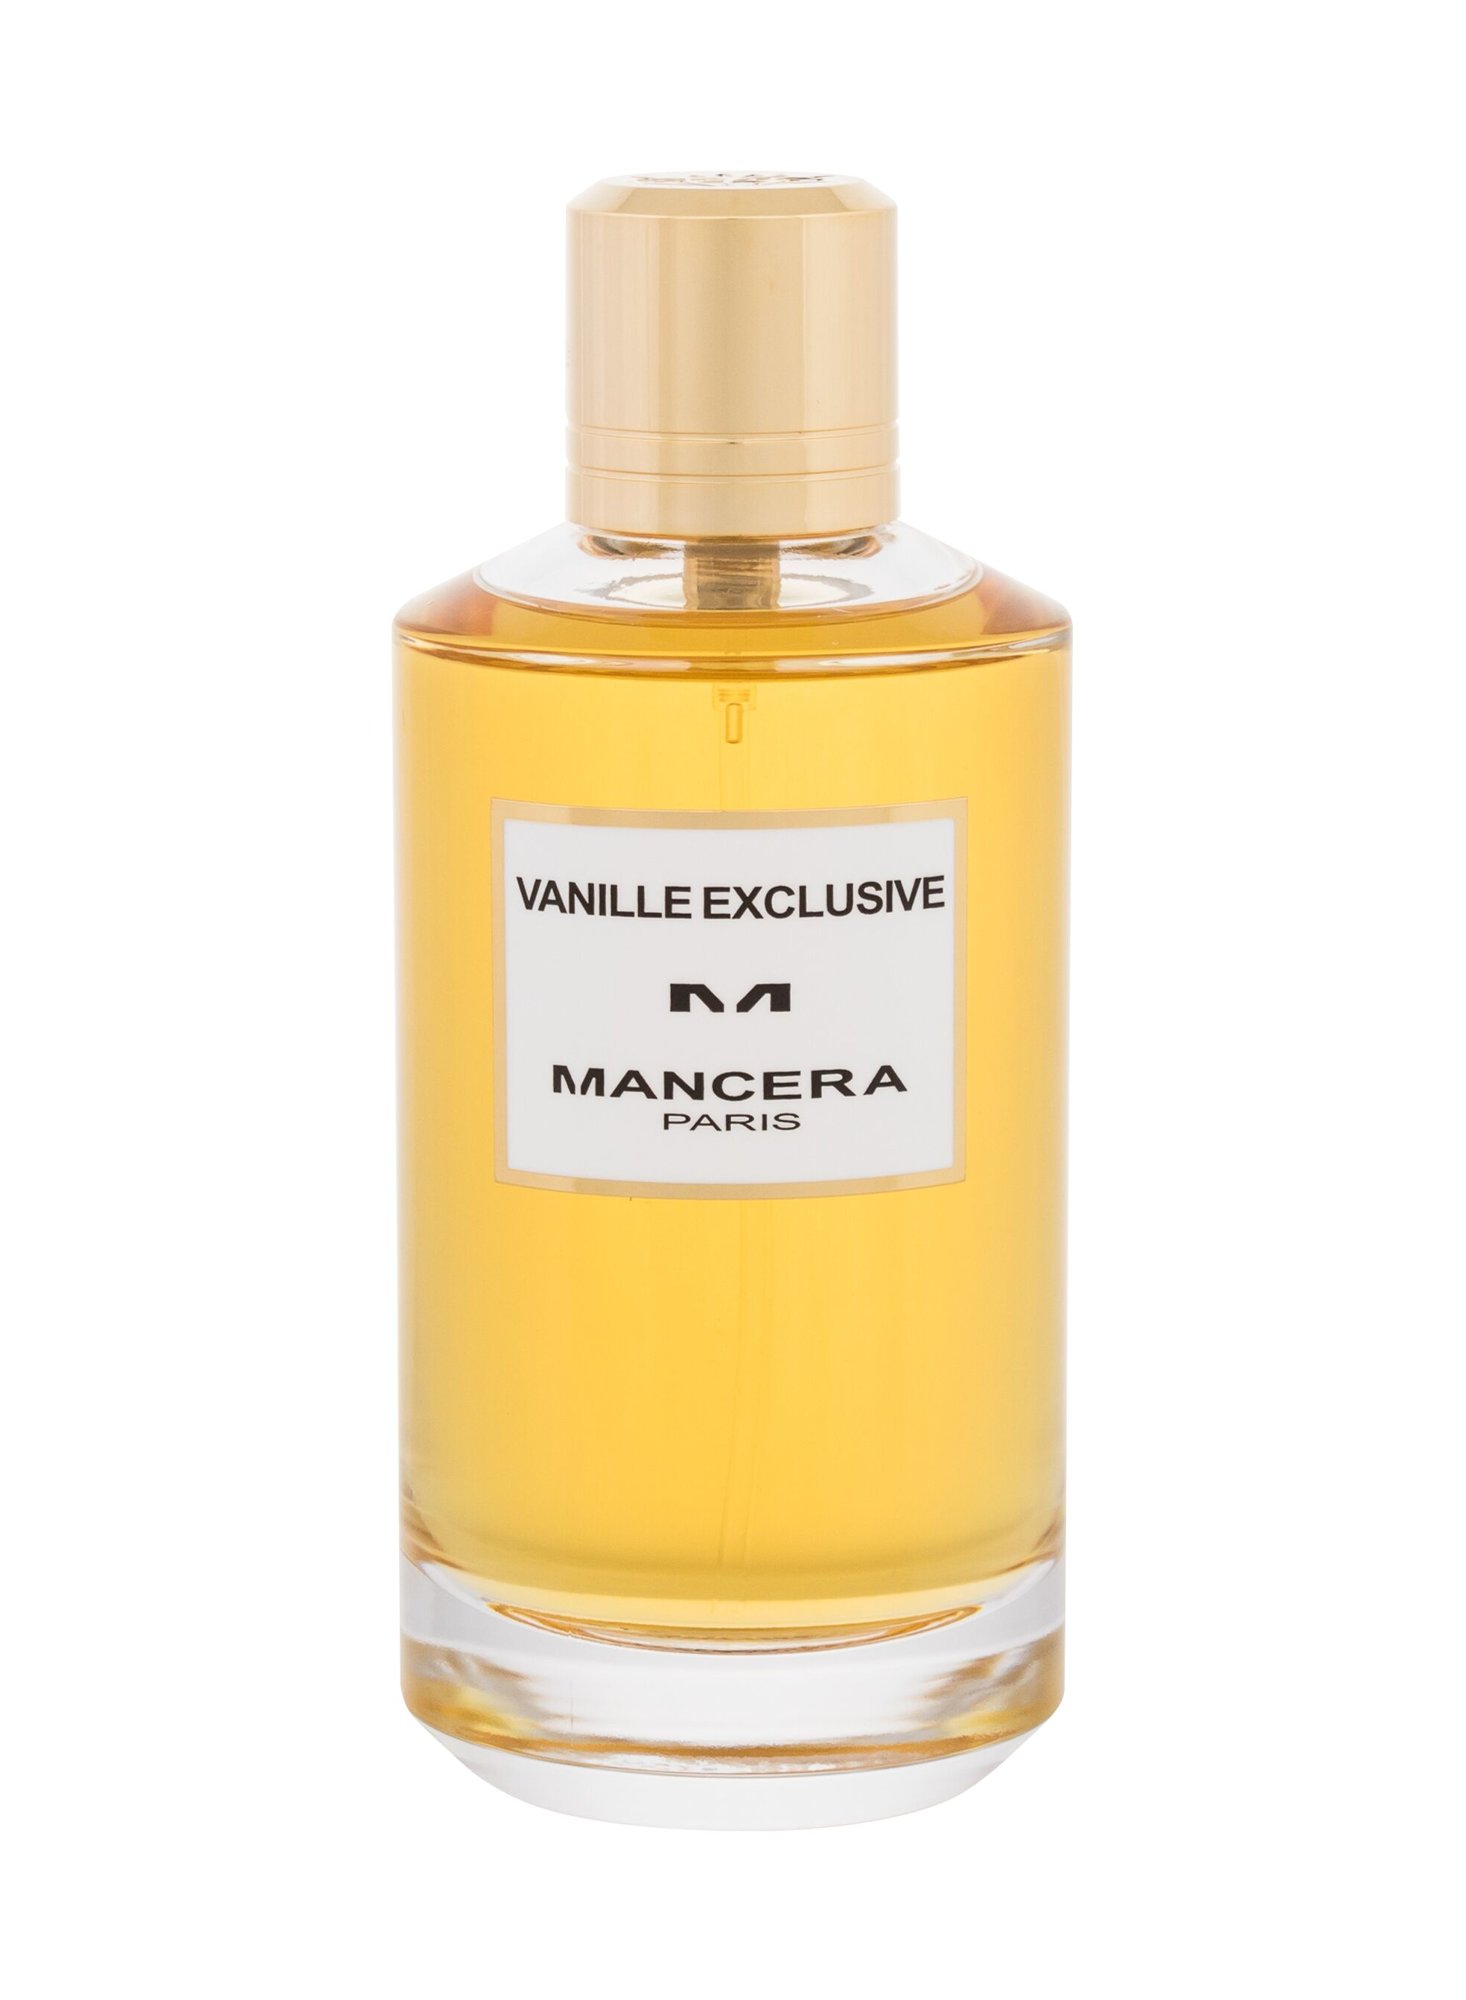 Mancera Les Exclusifs Vanille Exclusive 120ml NIŠINIAI Kvepalai Unisex EDP (Pažeista pakuotė)